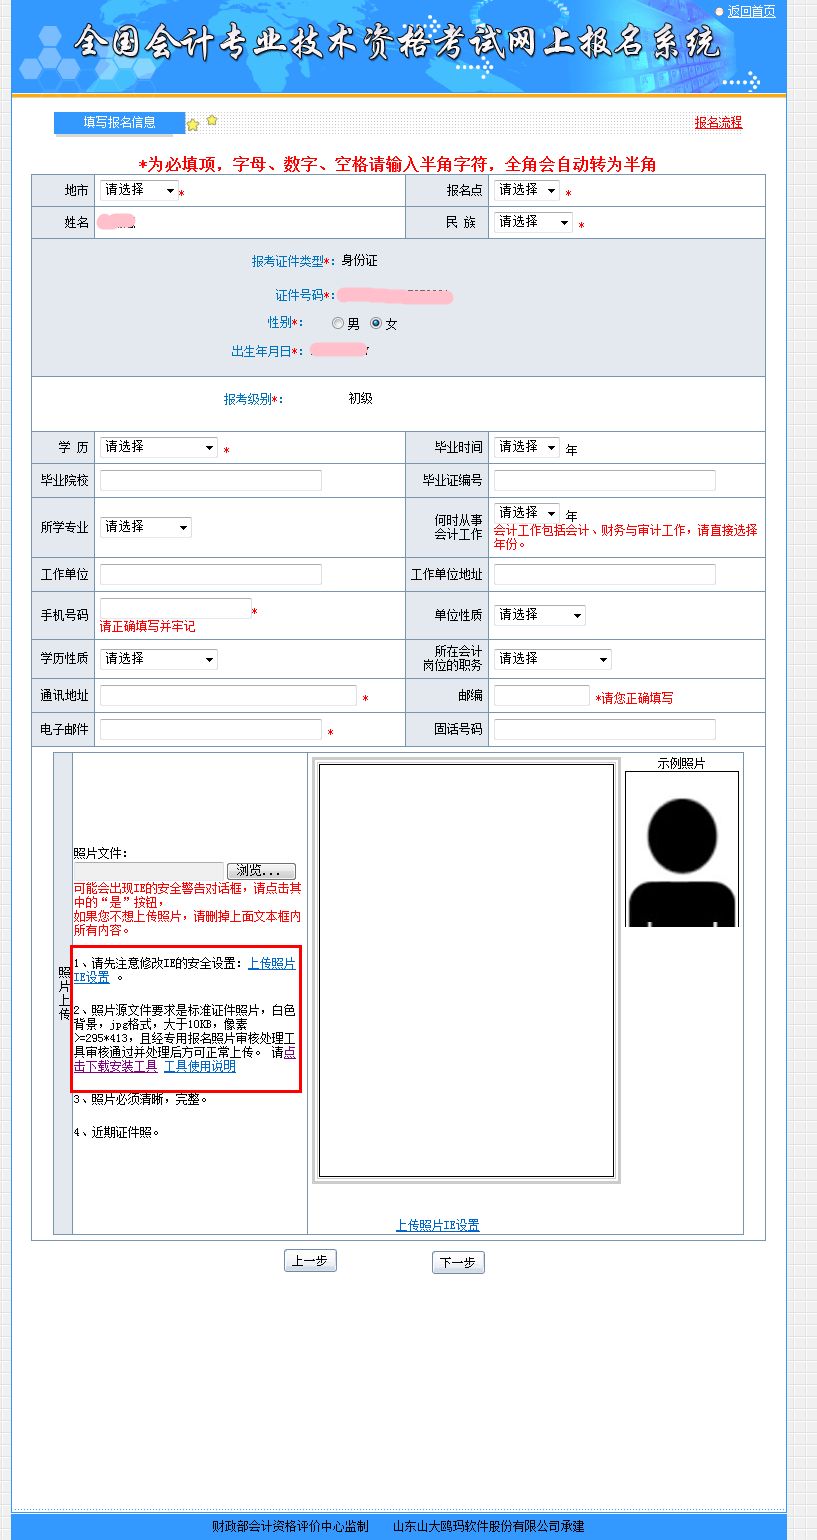 2019年江西初级会计职称已经于2018年11月14日正式开通报名通道,还有